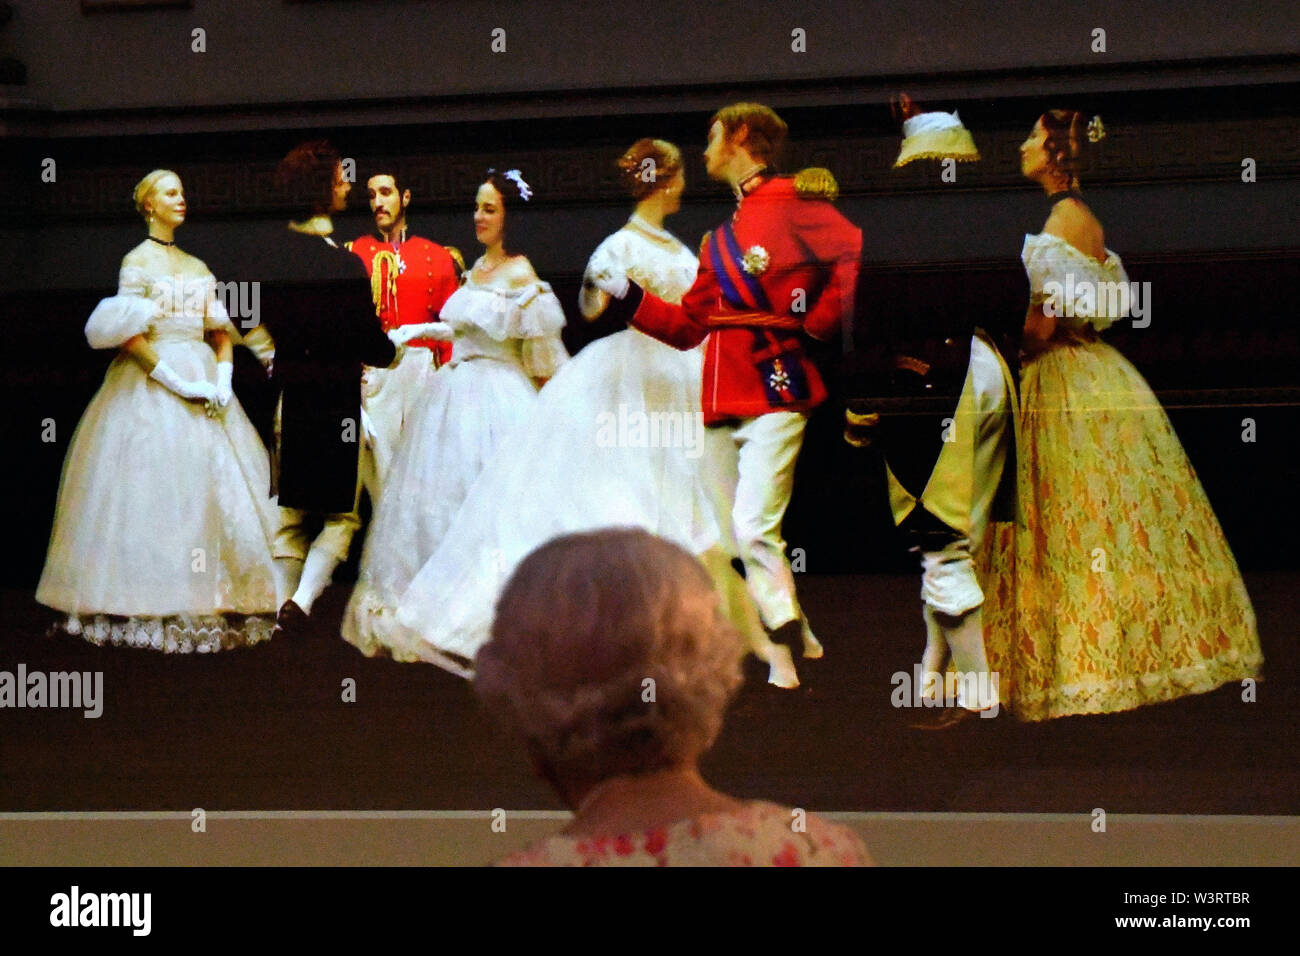 Königin Elizabeth II. Betrachtet eine viktorianische Illusionstechnik, bekannt als Pepper's Ghost of a Walzer, der beim Krimball von 1856 im Ballsaal des Buckingham Palace getanzt wurde. Als Teil der Ausstellung anlässlich des 200. Geburtstages von Queen Victoria zur Sommereröffnung des Buckingham Palace, London. Stockfoto